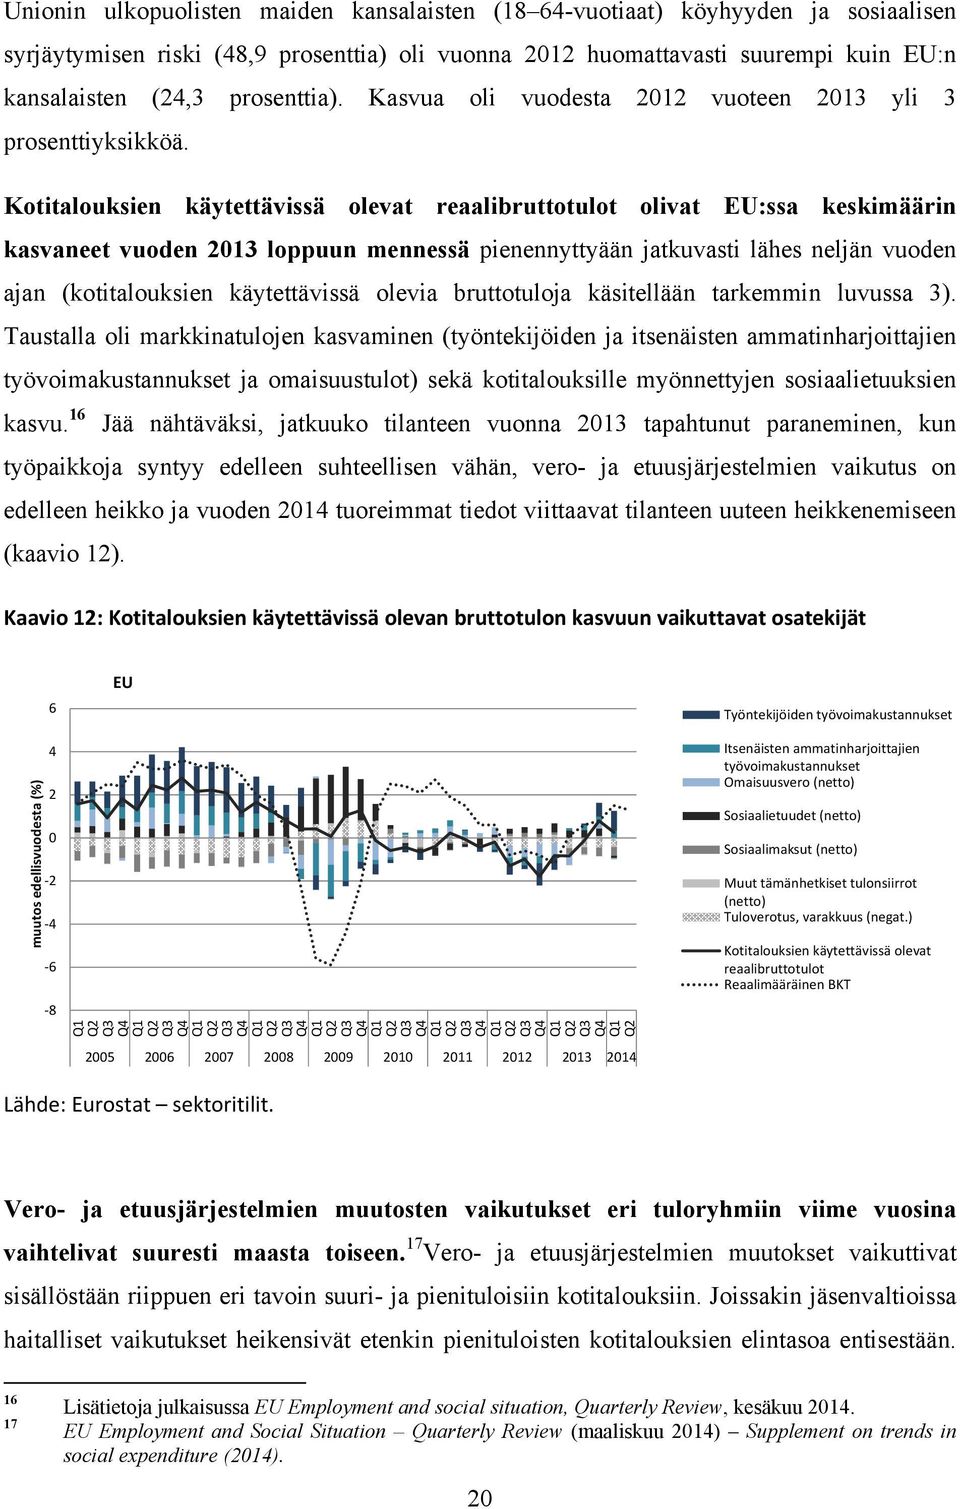 Kotitalouksien käytettävissä olevat reaalibruttotulot olivat EU:ssa keskimäärin kasvaneet vuoden 2013 loppuun mennessä pienennyttyään jatkuvasti lähes neljän vuoden ajan (kotitalouksien käytettävissä